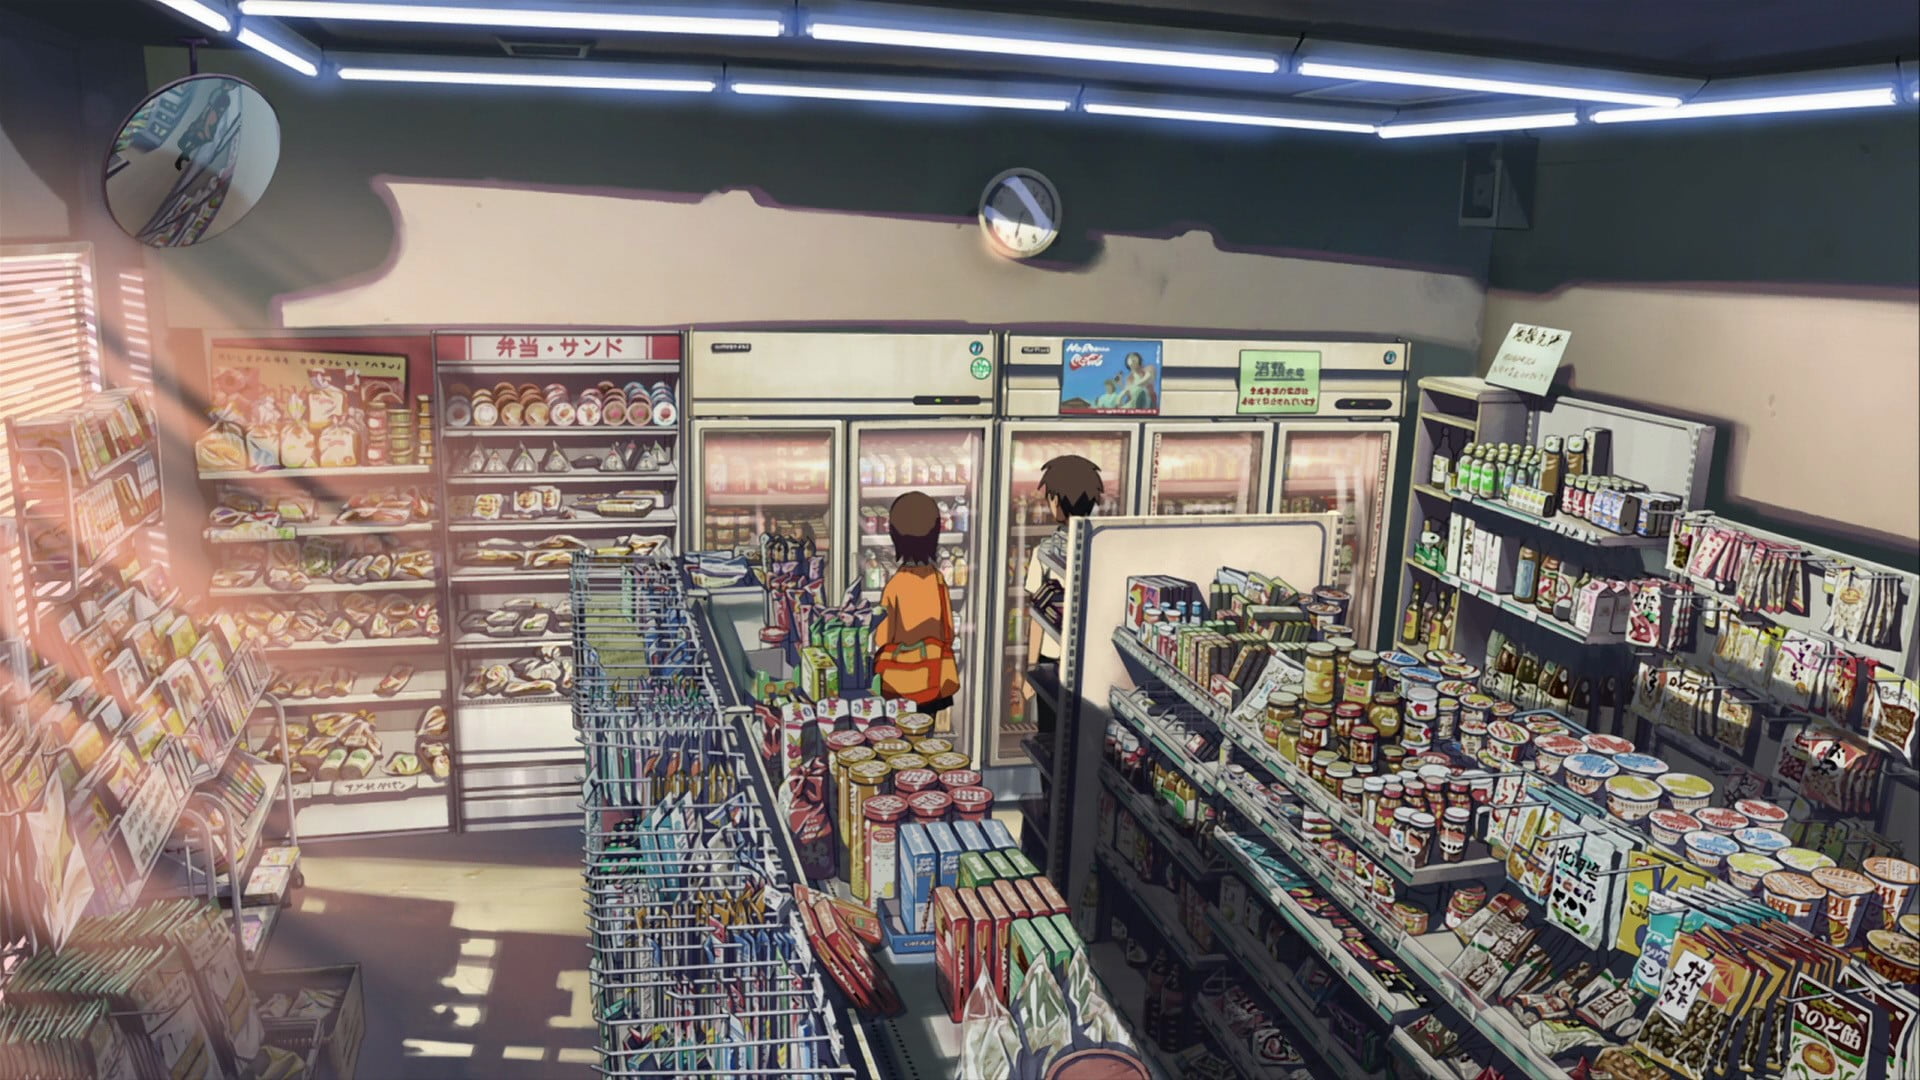 Prodavnica "Chibi" Anime-artwork-anime-girls-markets-wallpaper